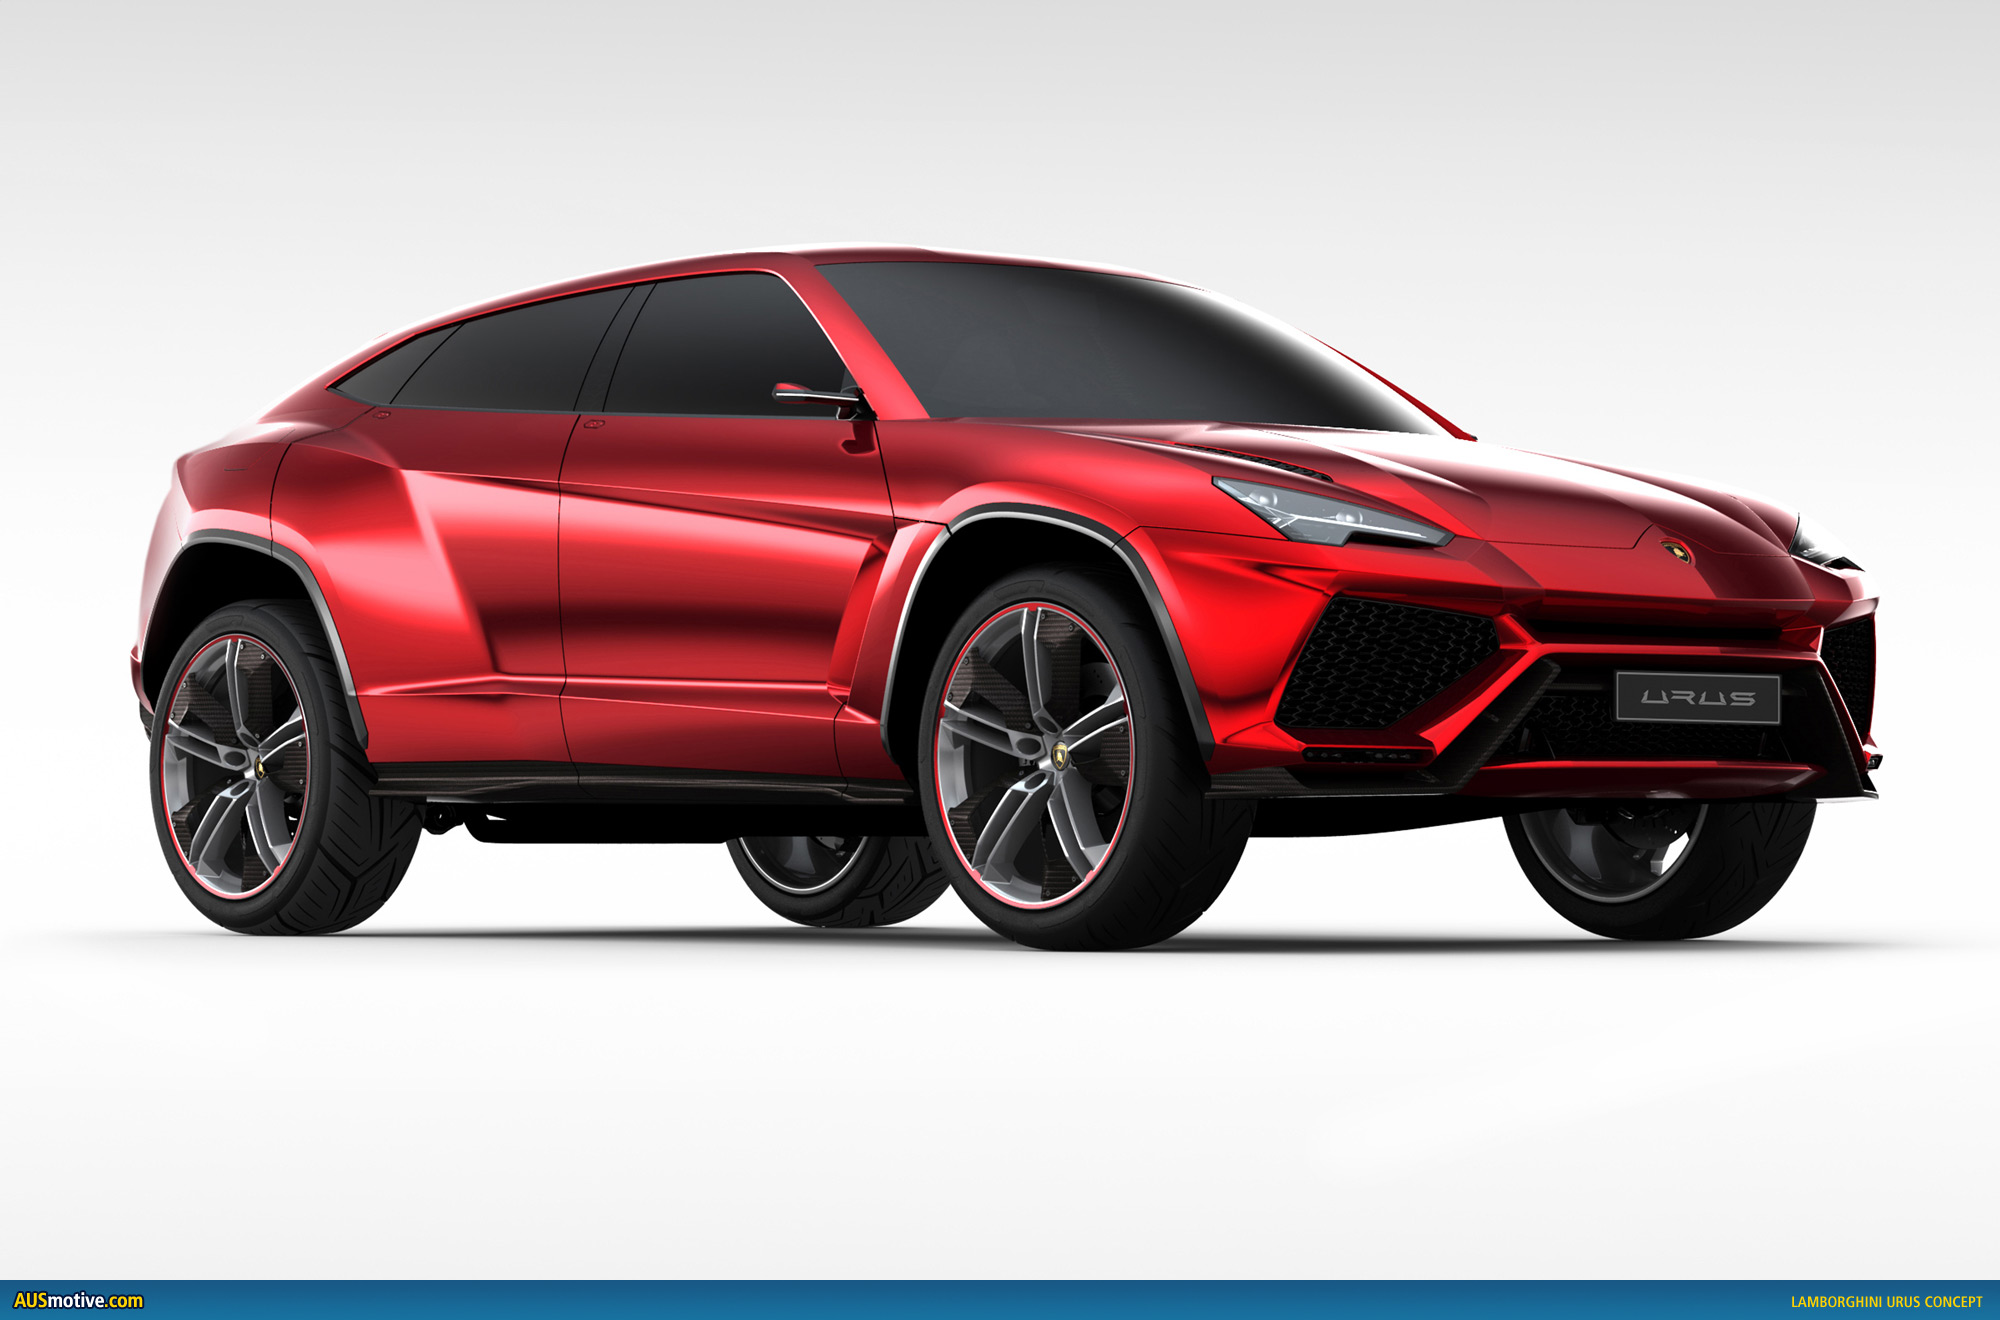 AUSmotive.com » Lamborghini Urus SUV concept revealed